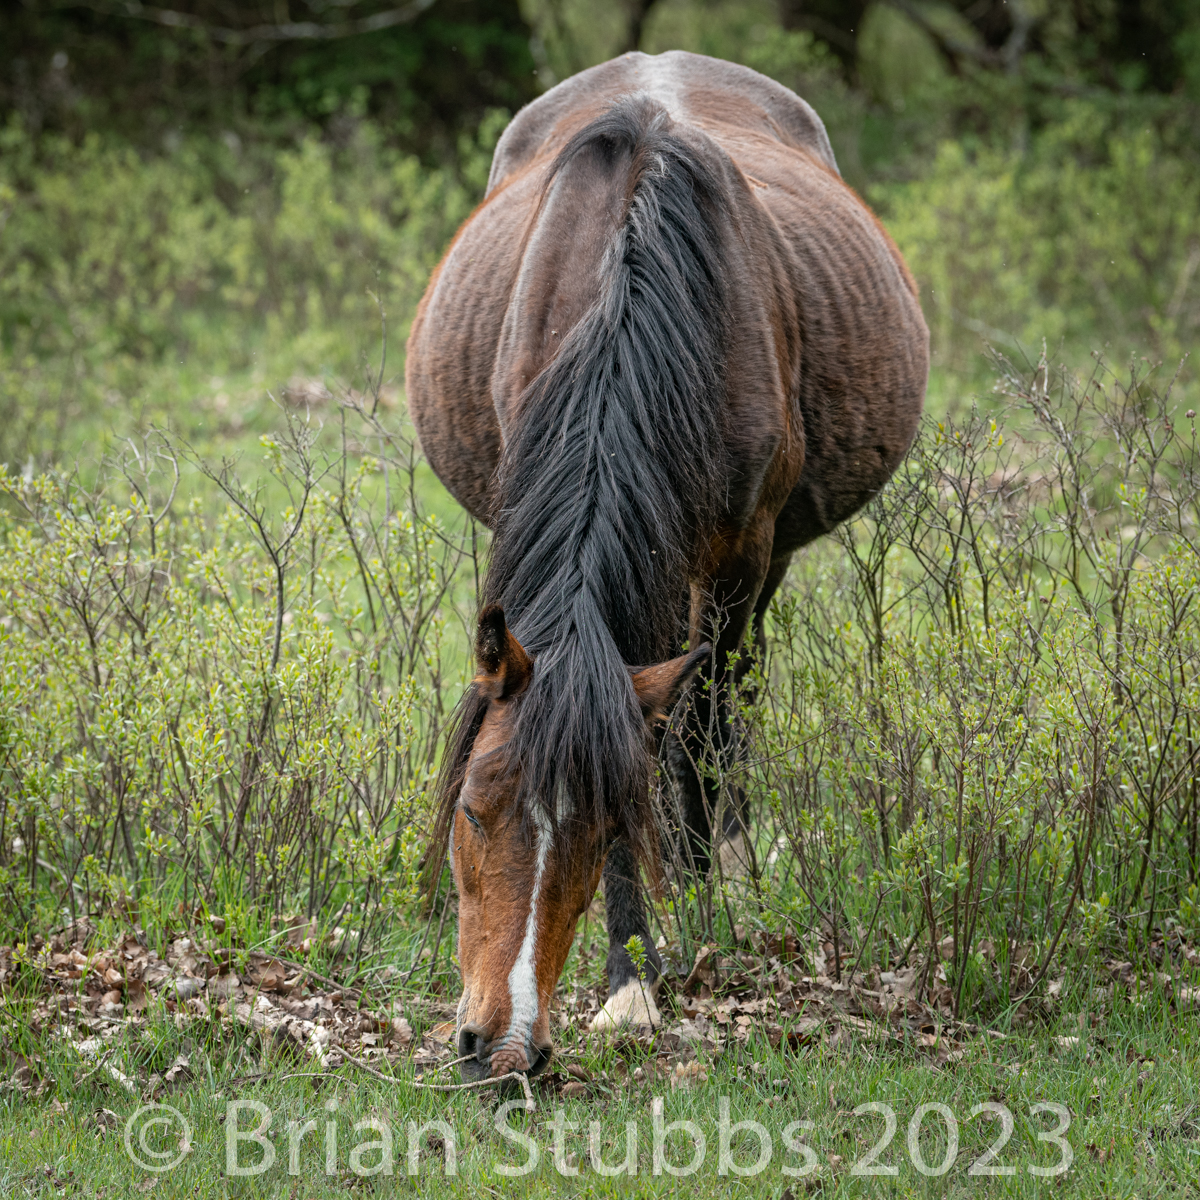 A heavily pregnant pony